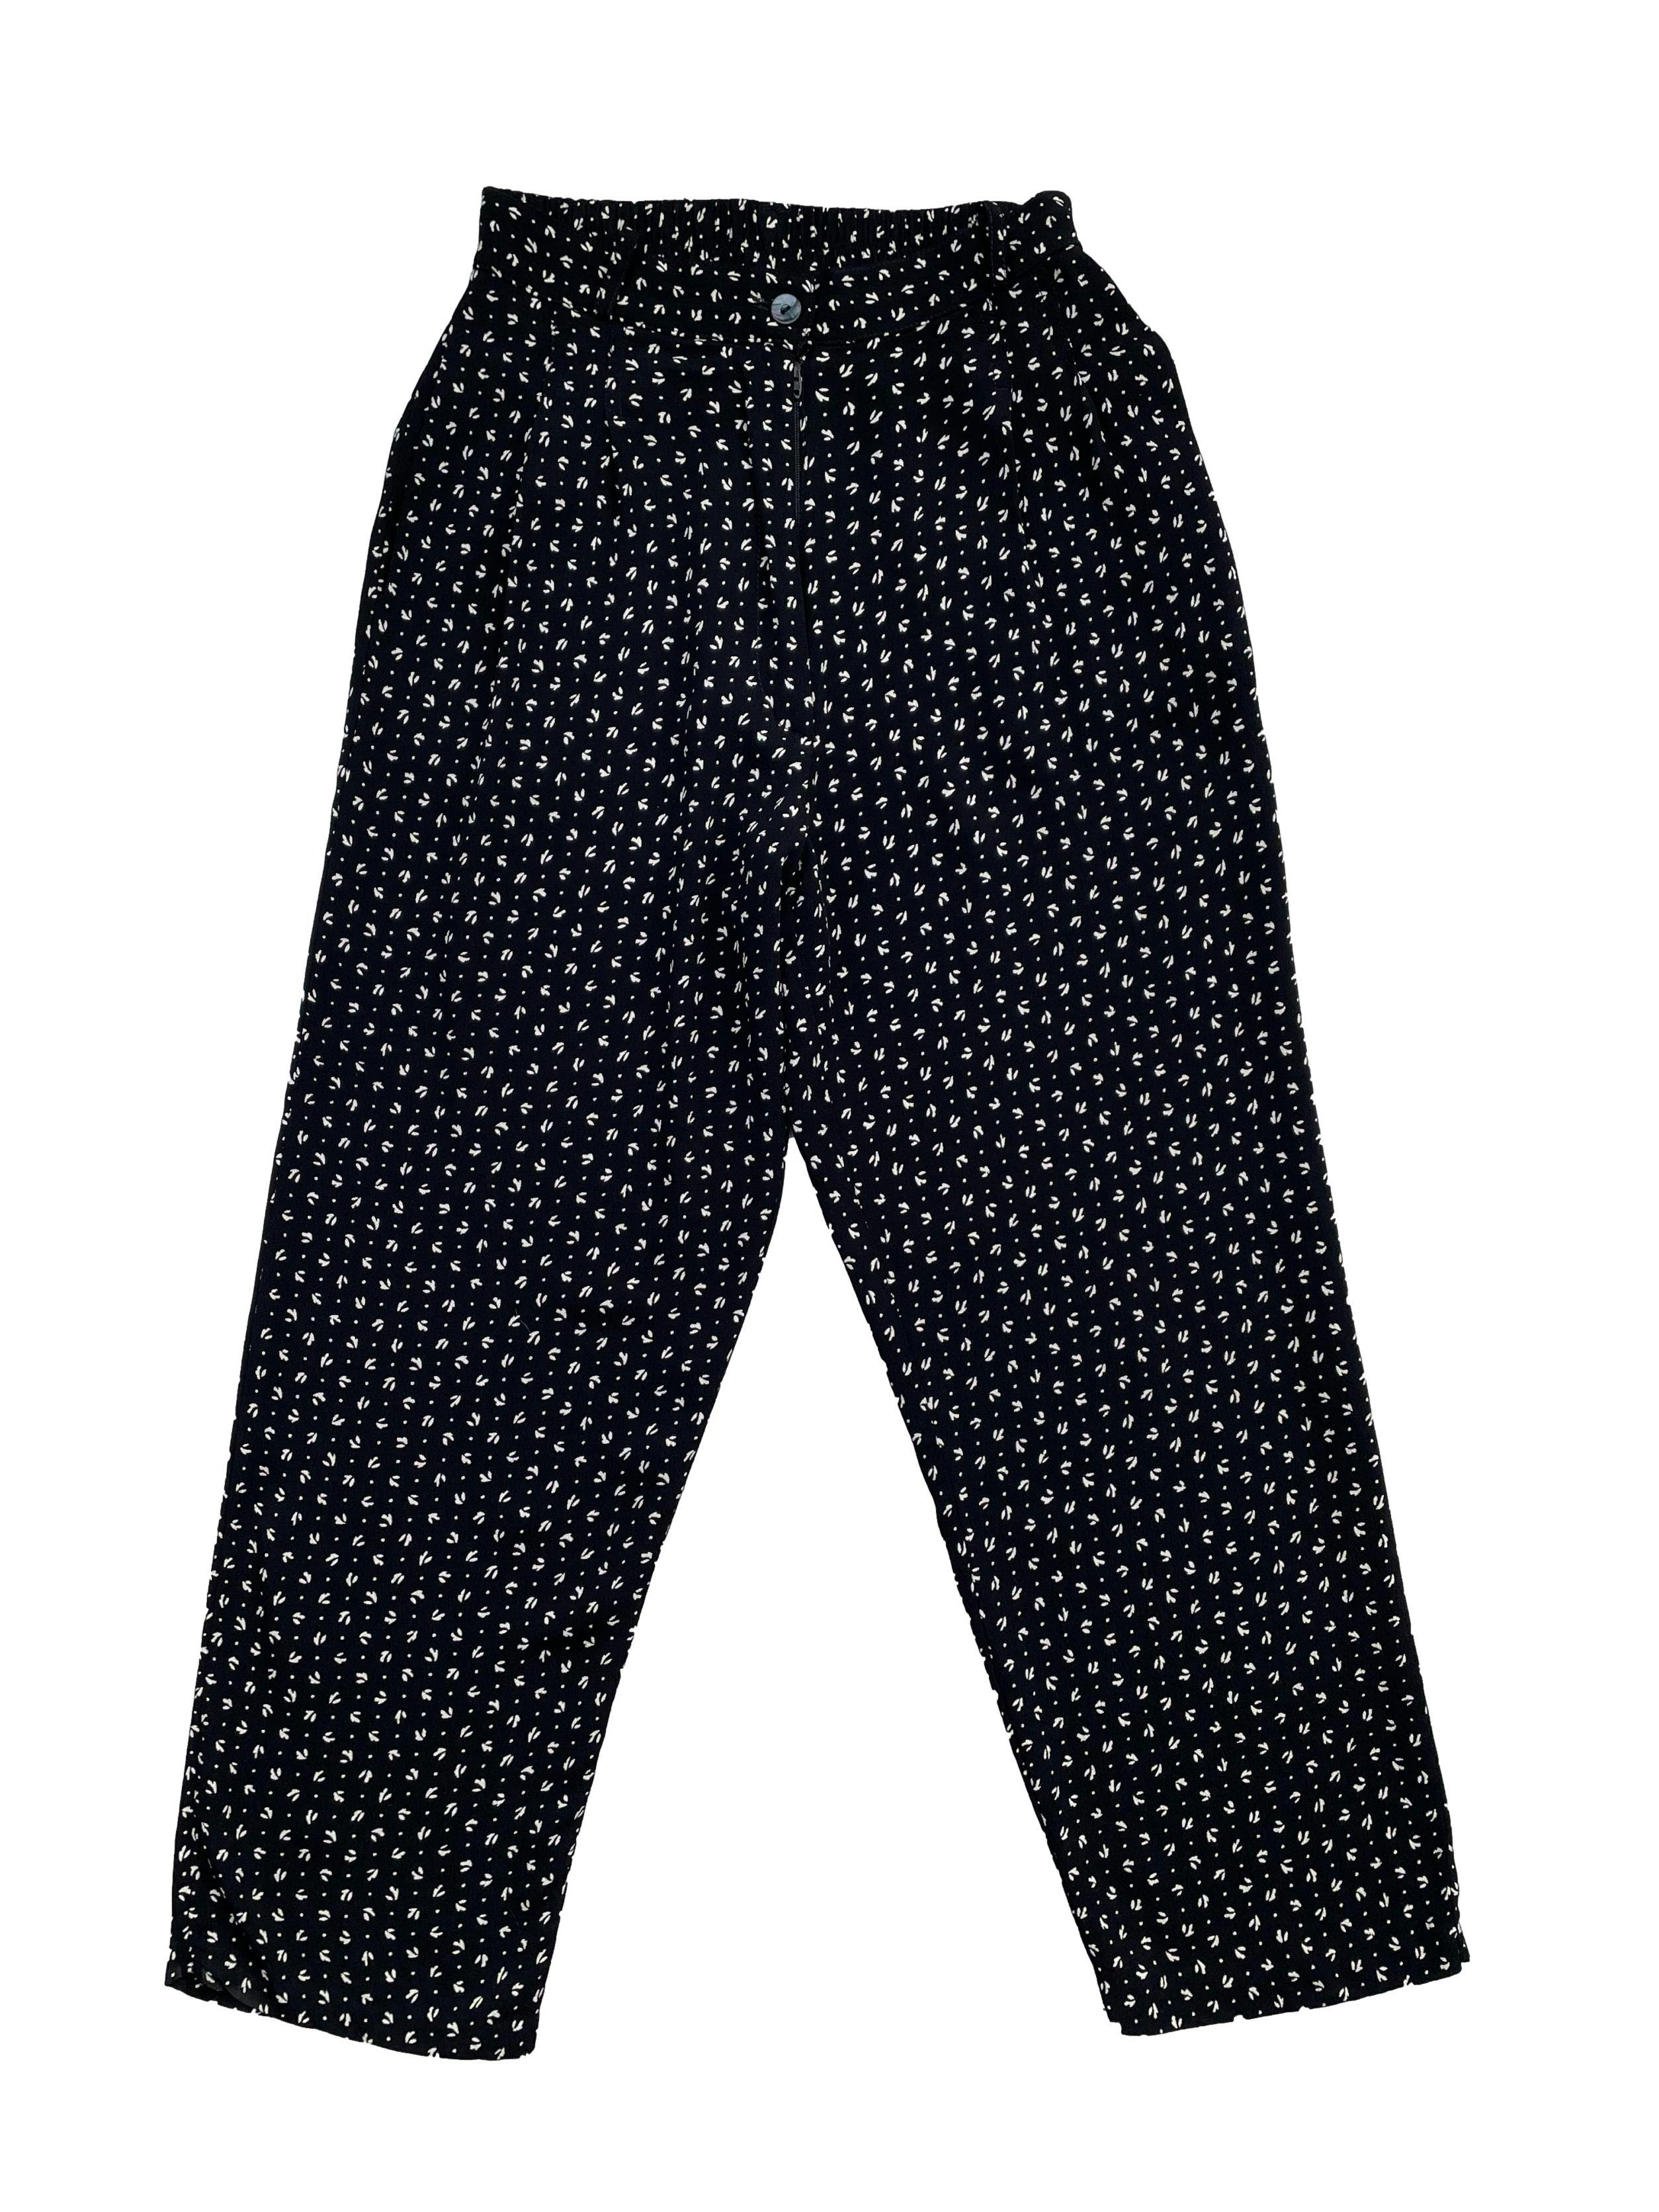 Pantalón vintage corte slim en blanco y negro ,con cintura elástica, bolsillos, presillas y cierre .Largo 91cm.